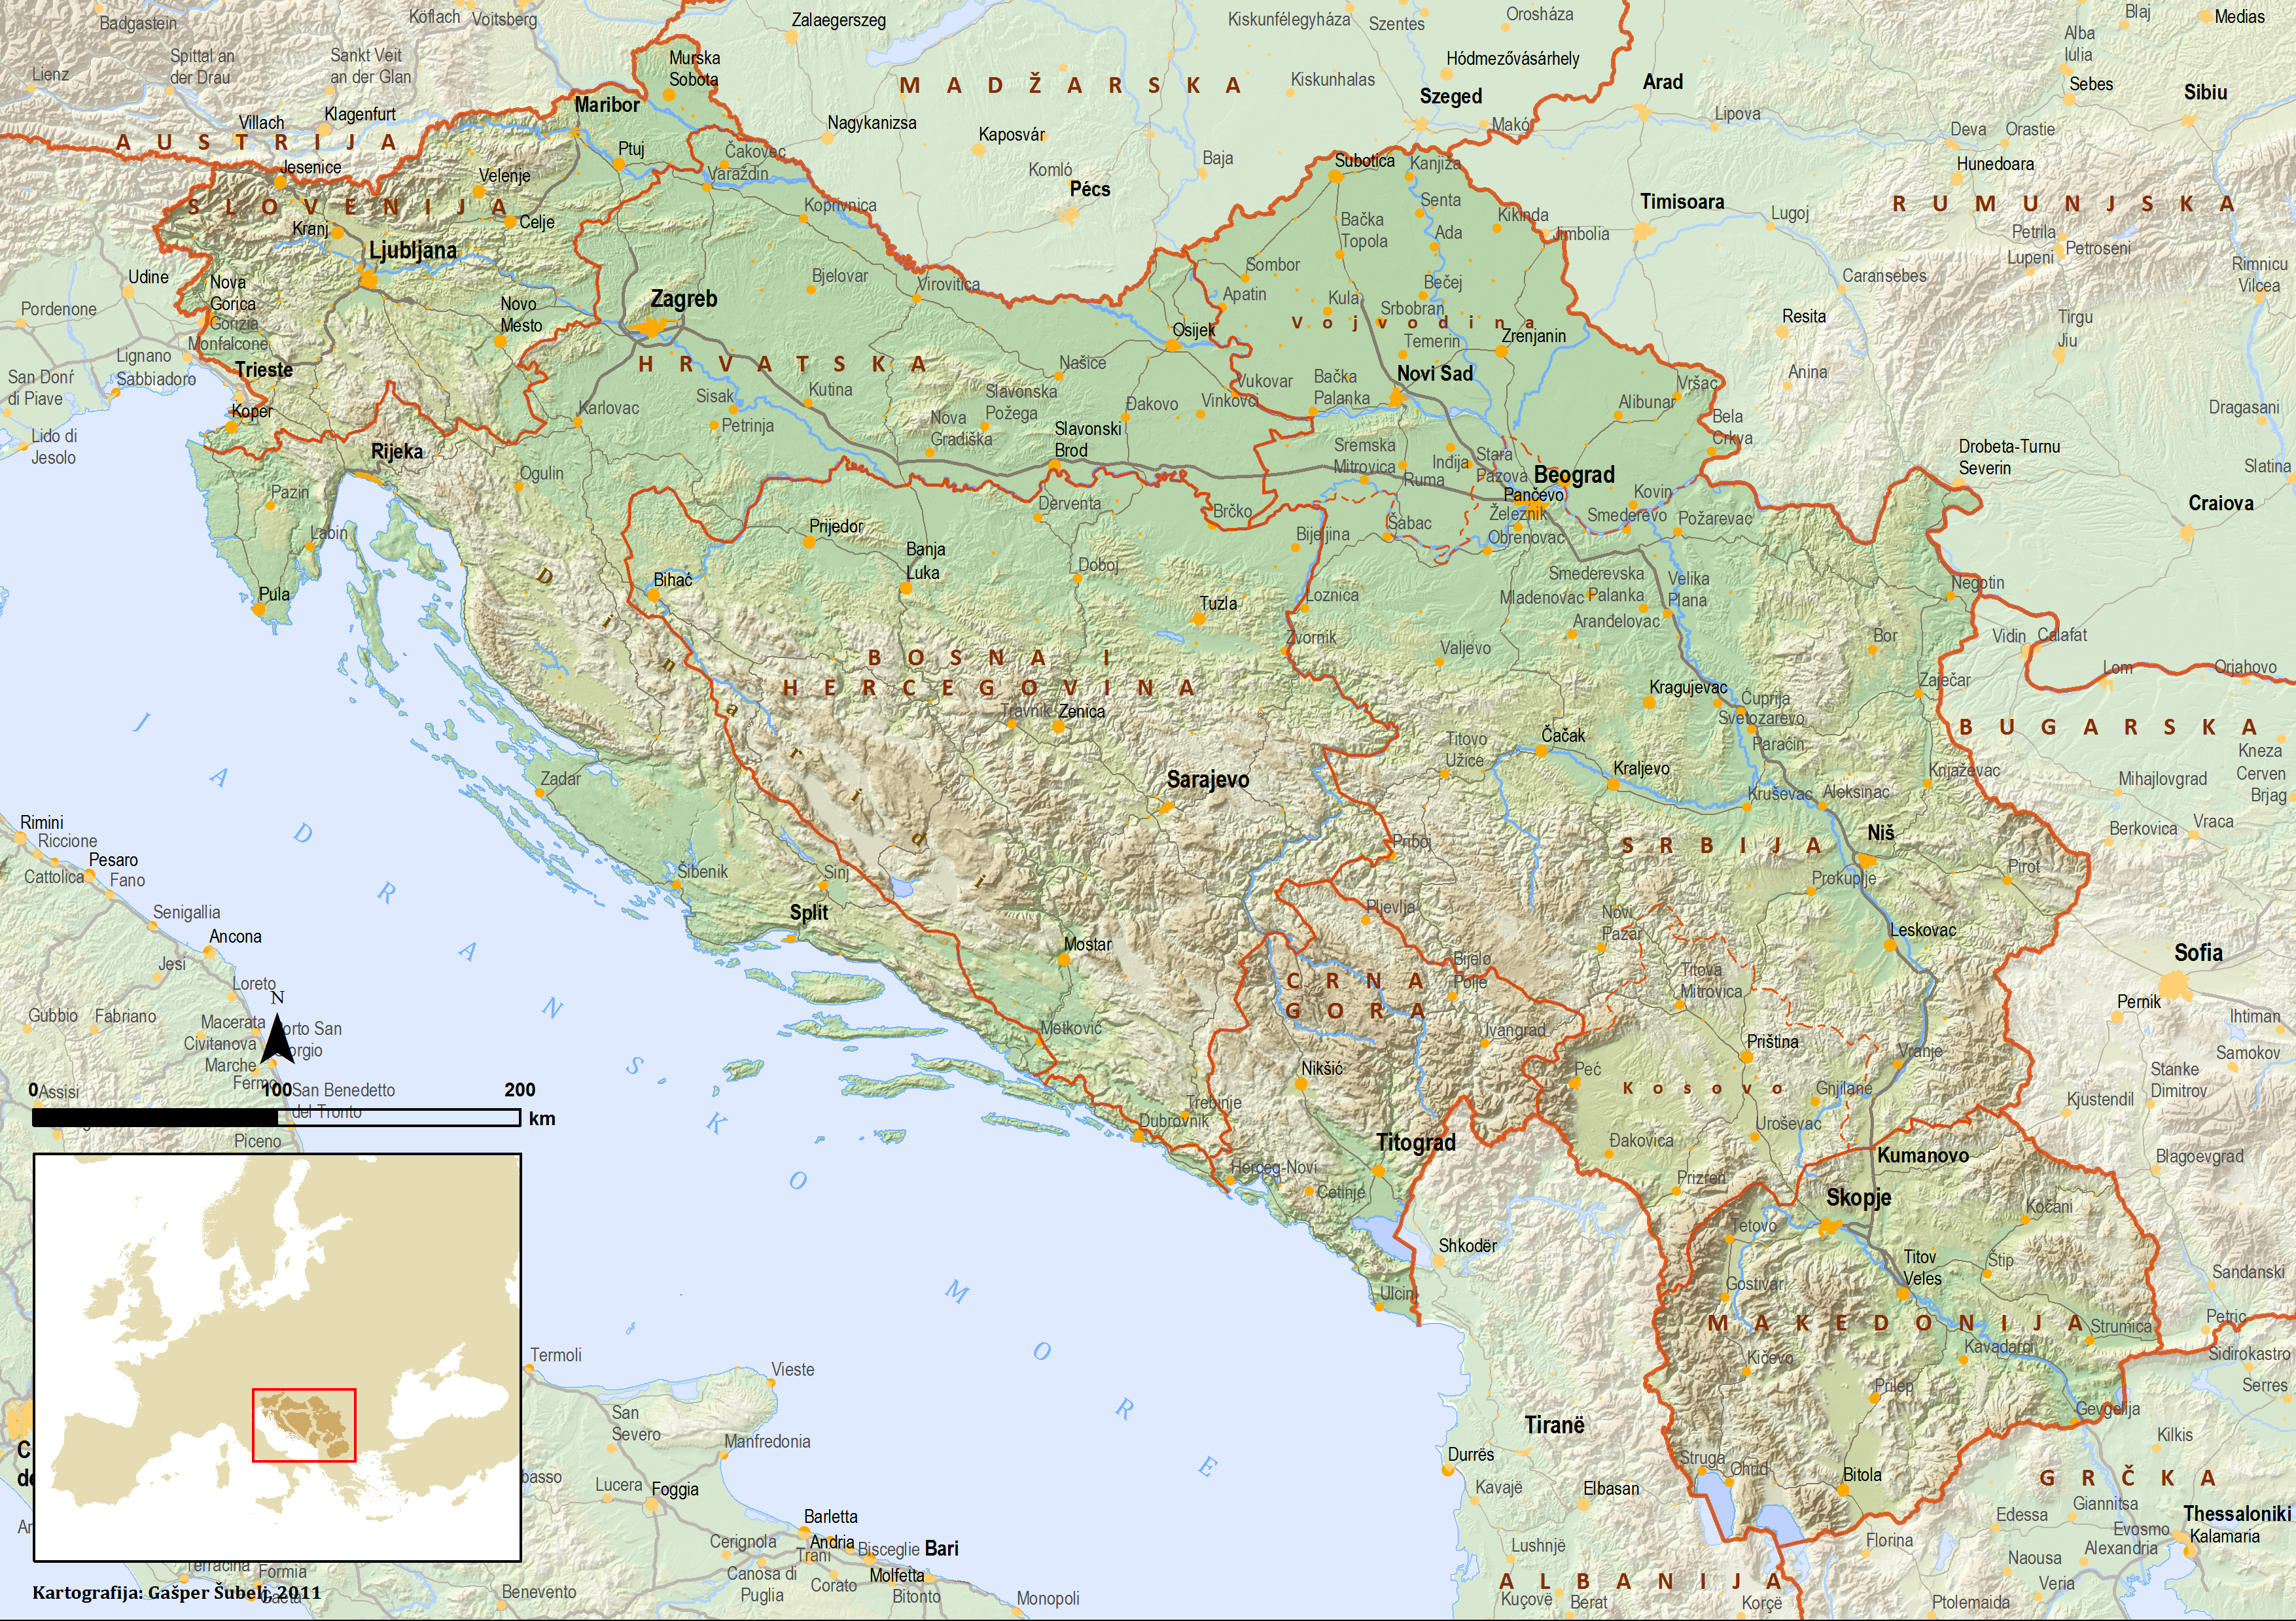 Karta Jugoslavije 1990 | karta